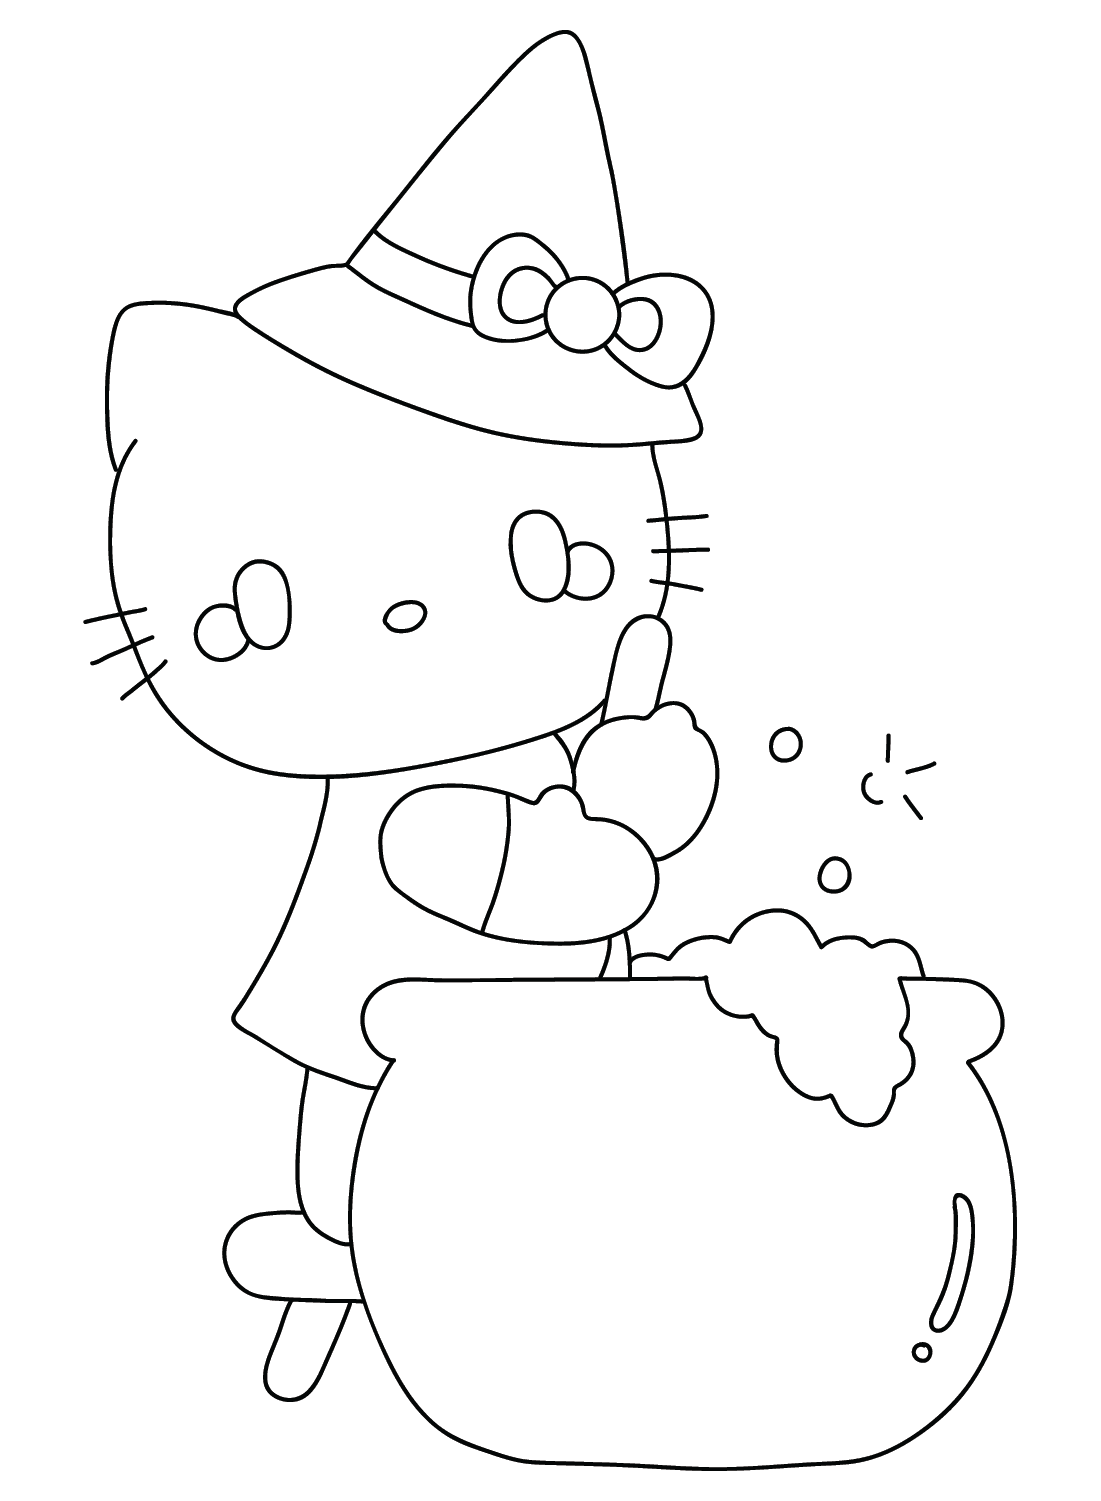 Página para colorir fofa da Hello Kitty de Halloween